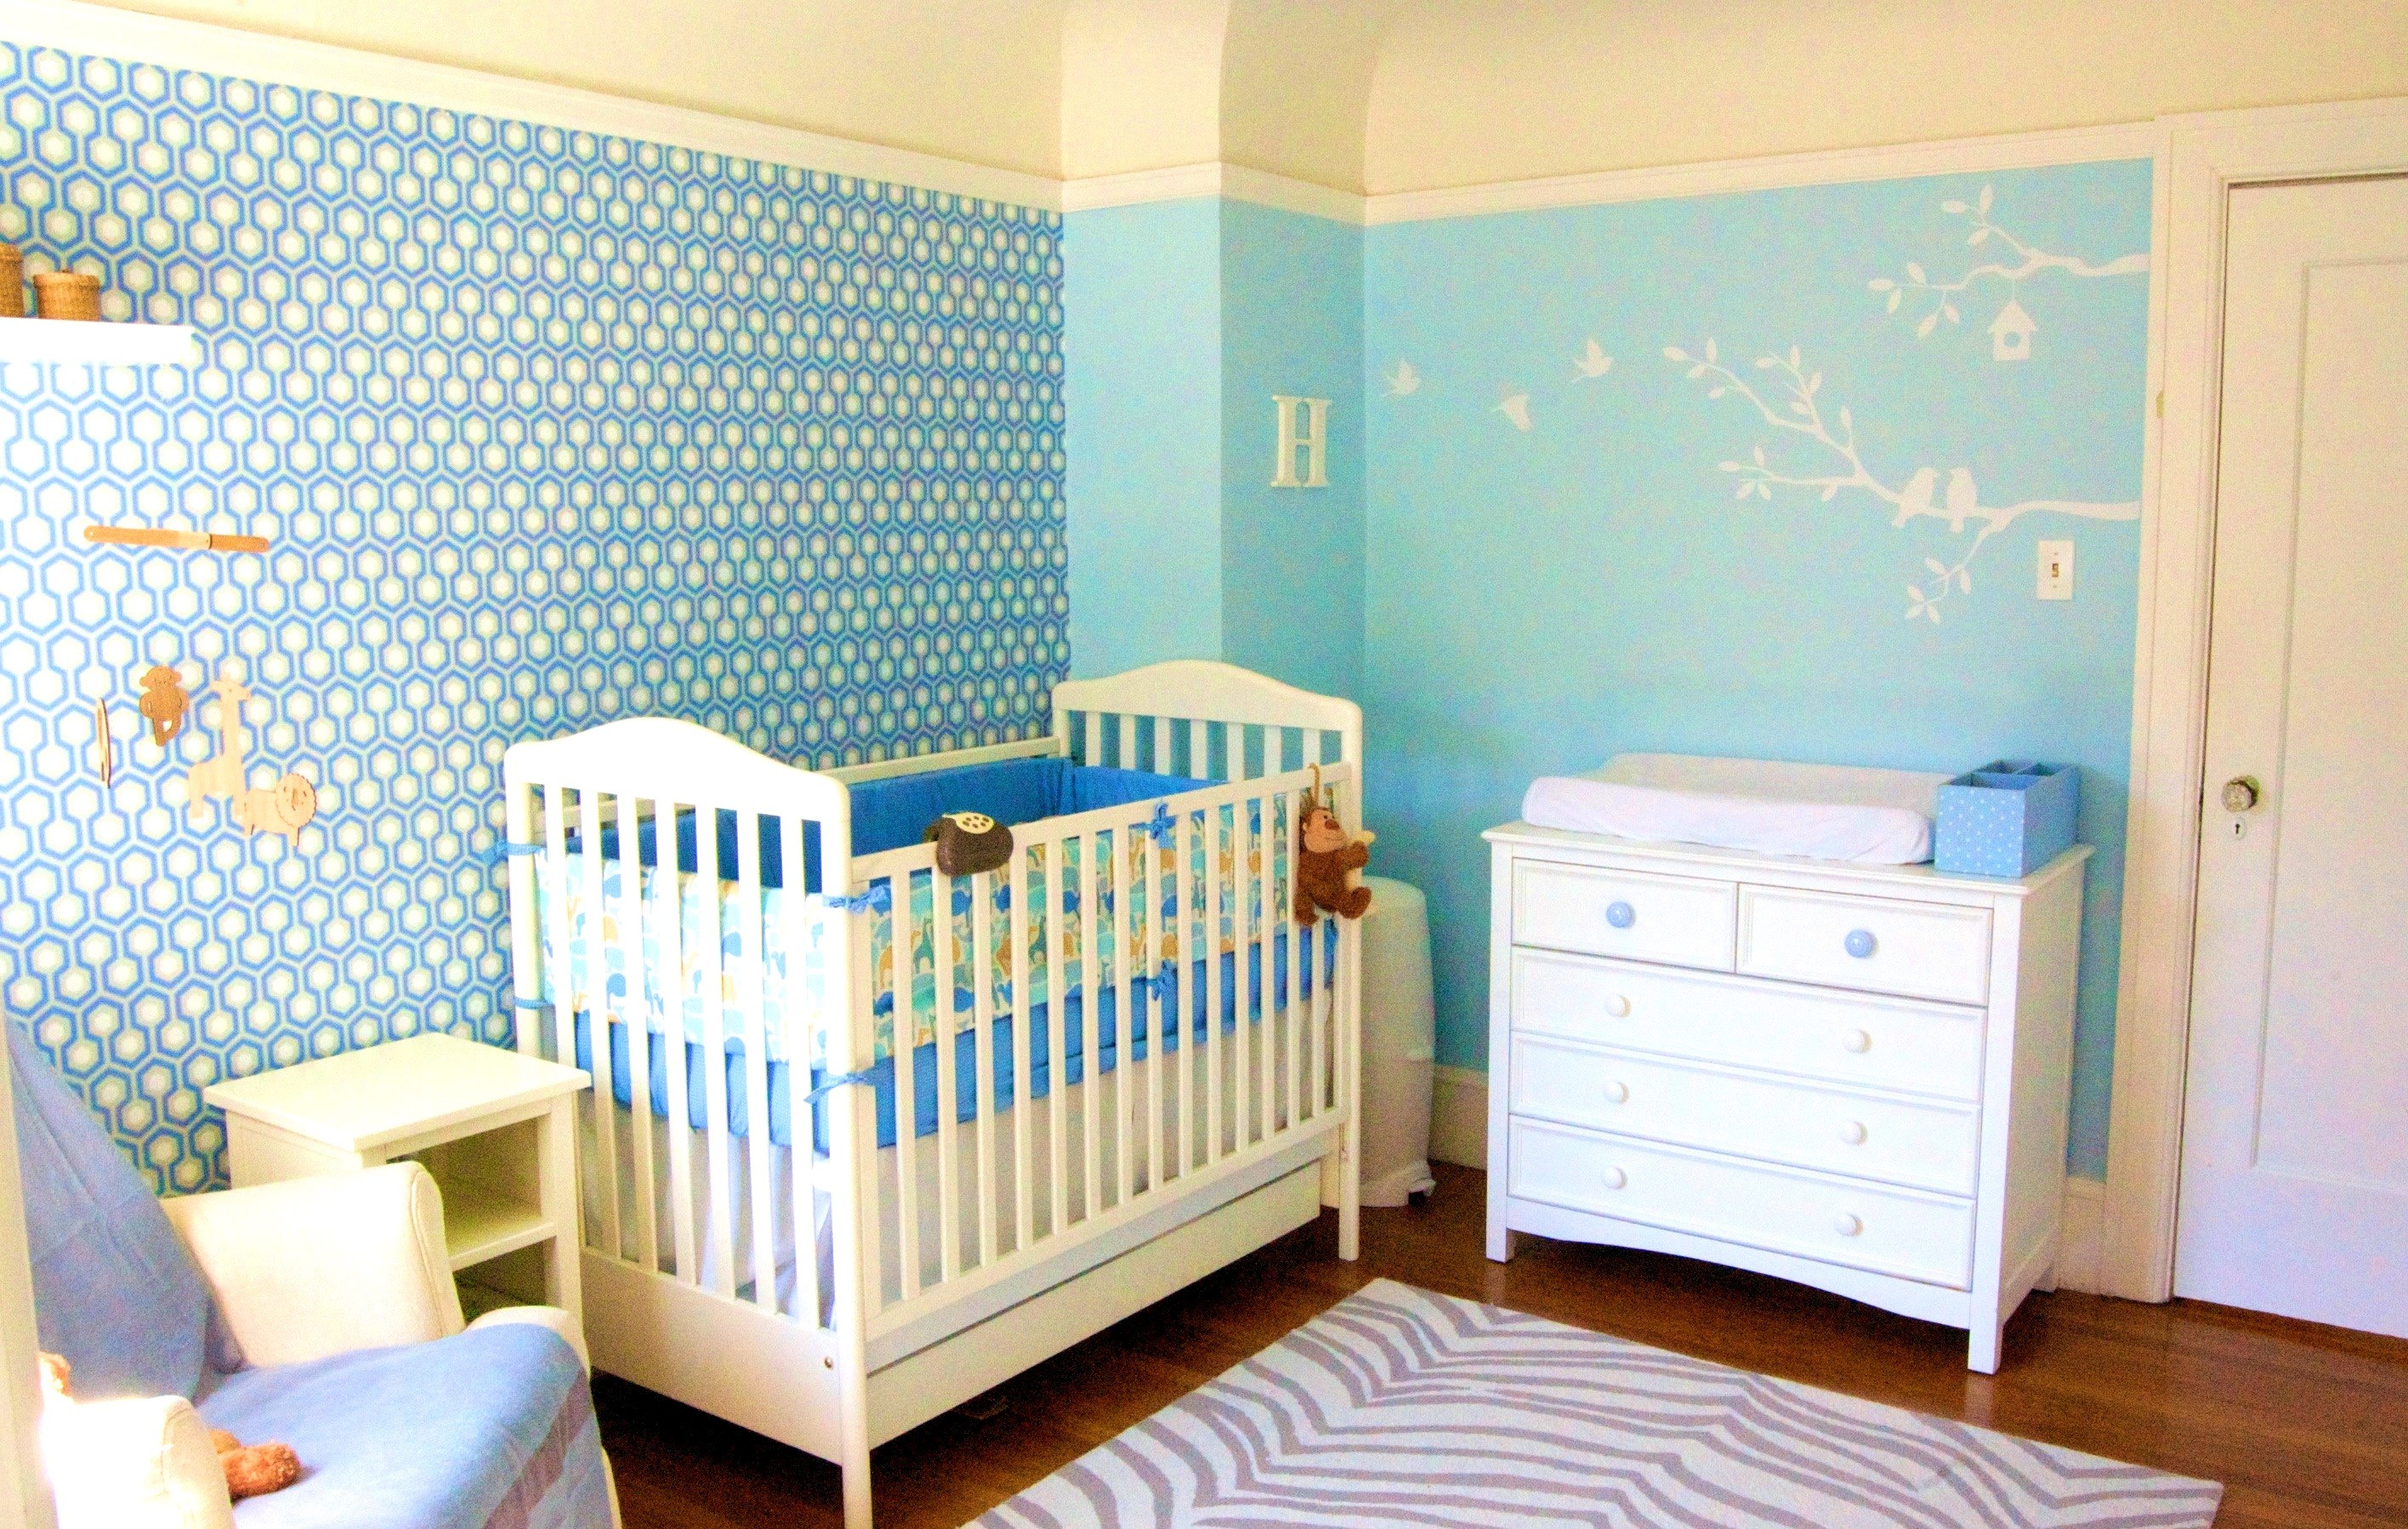 2832x1798, Download Baby Room Wallpaper Uk Gallery - Baby Room Wallpaper Blue - HD Wallpaper 